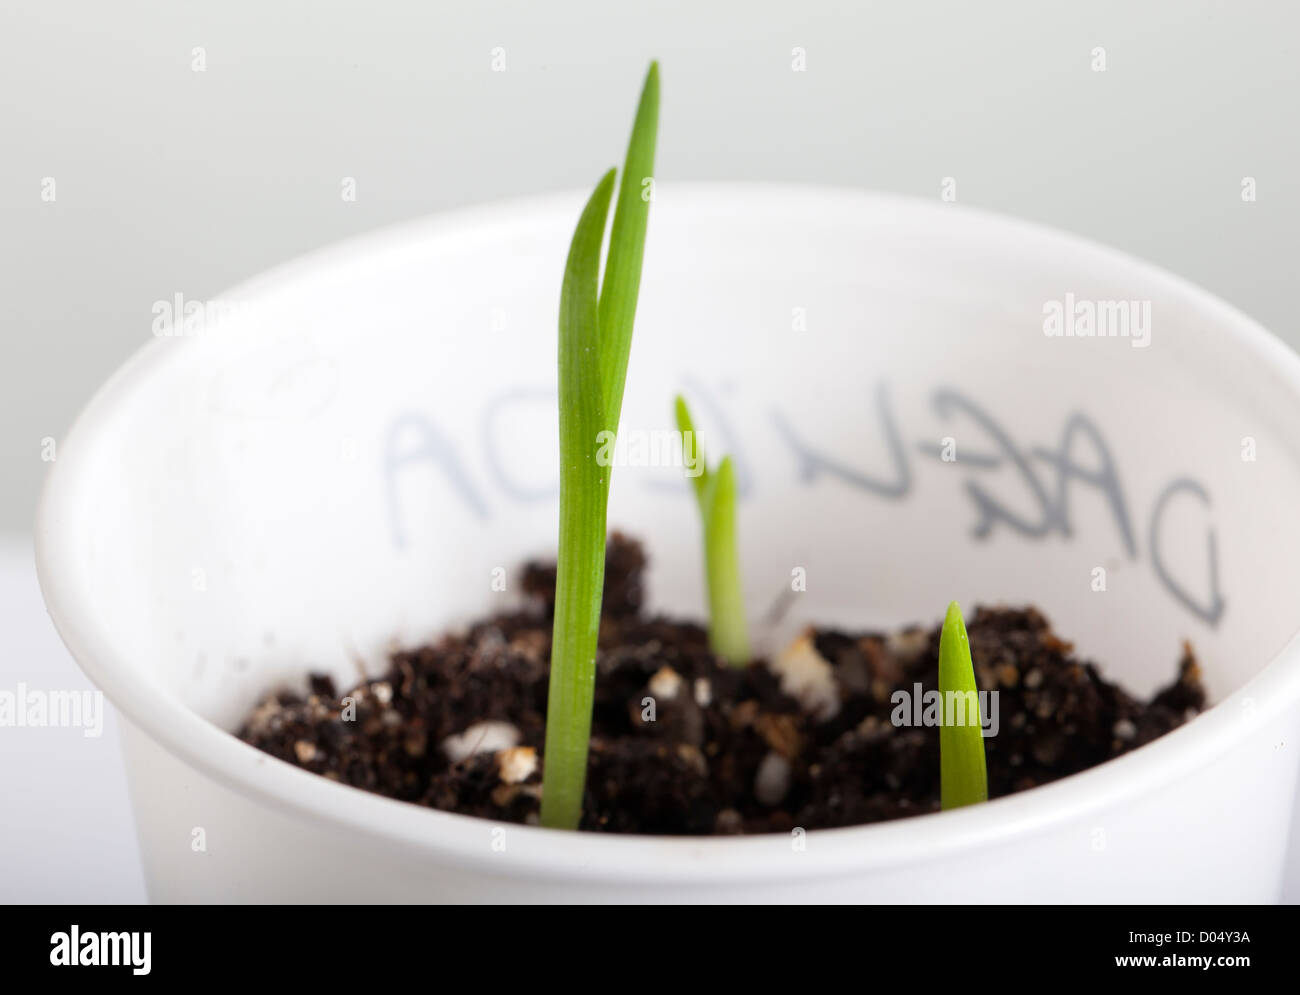 Daylily (Hemerocallis) seedlings Stock Photo